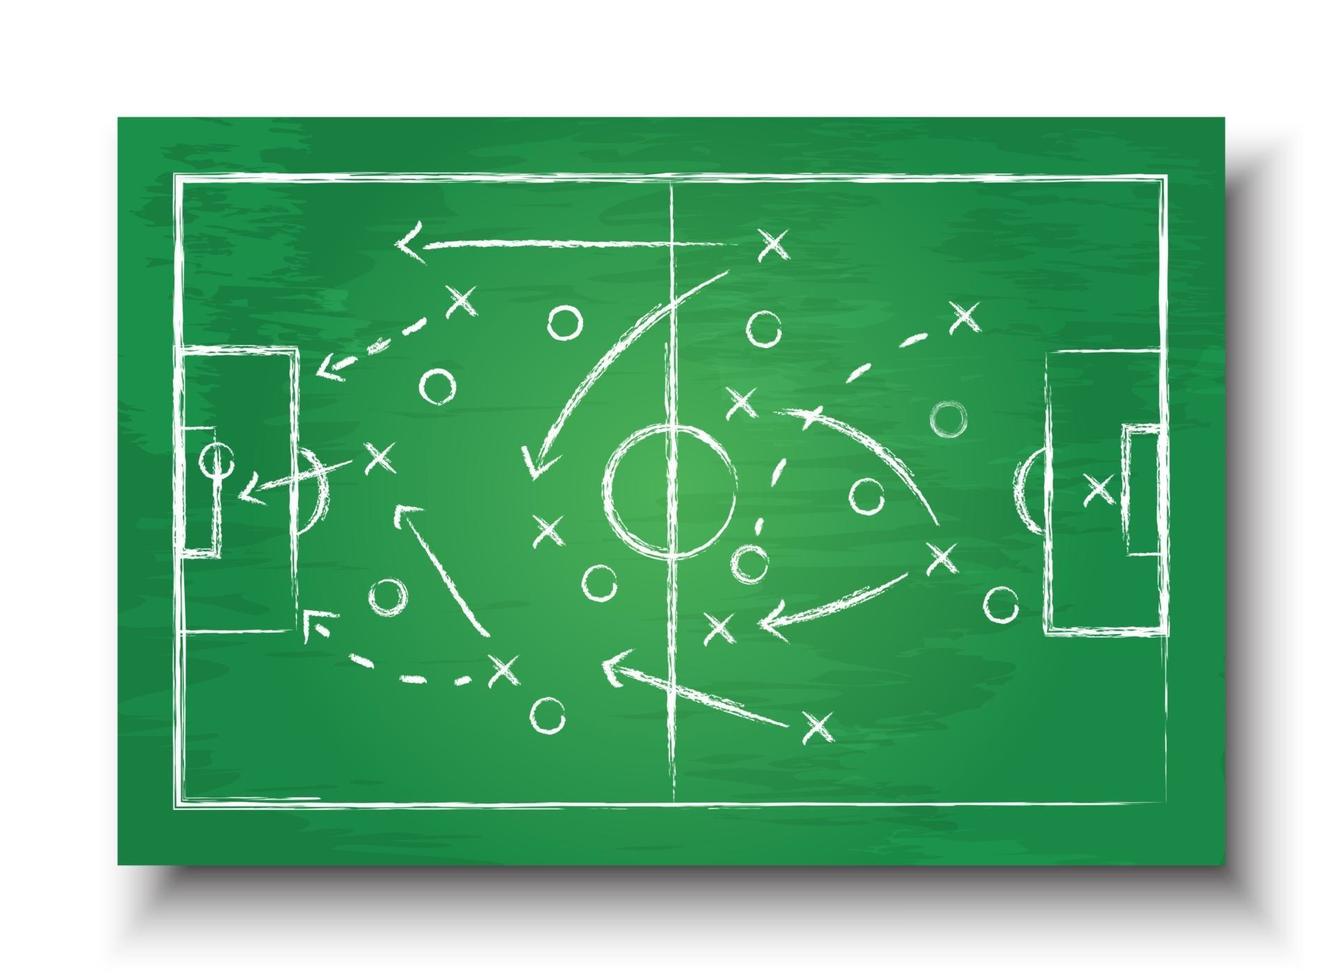 formation de coupe de football et tableau tactique avec vecteur de  stratégie de jeu de football pour le concept de tournoi de championnat du  monde international 2018 2524690 Art vectoriel chez Vecteezy